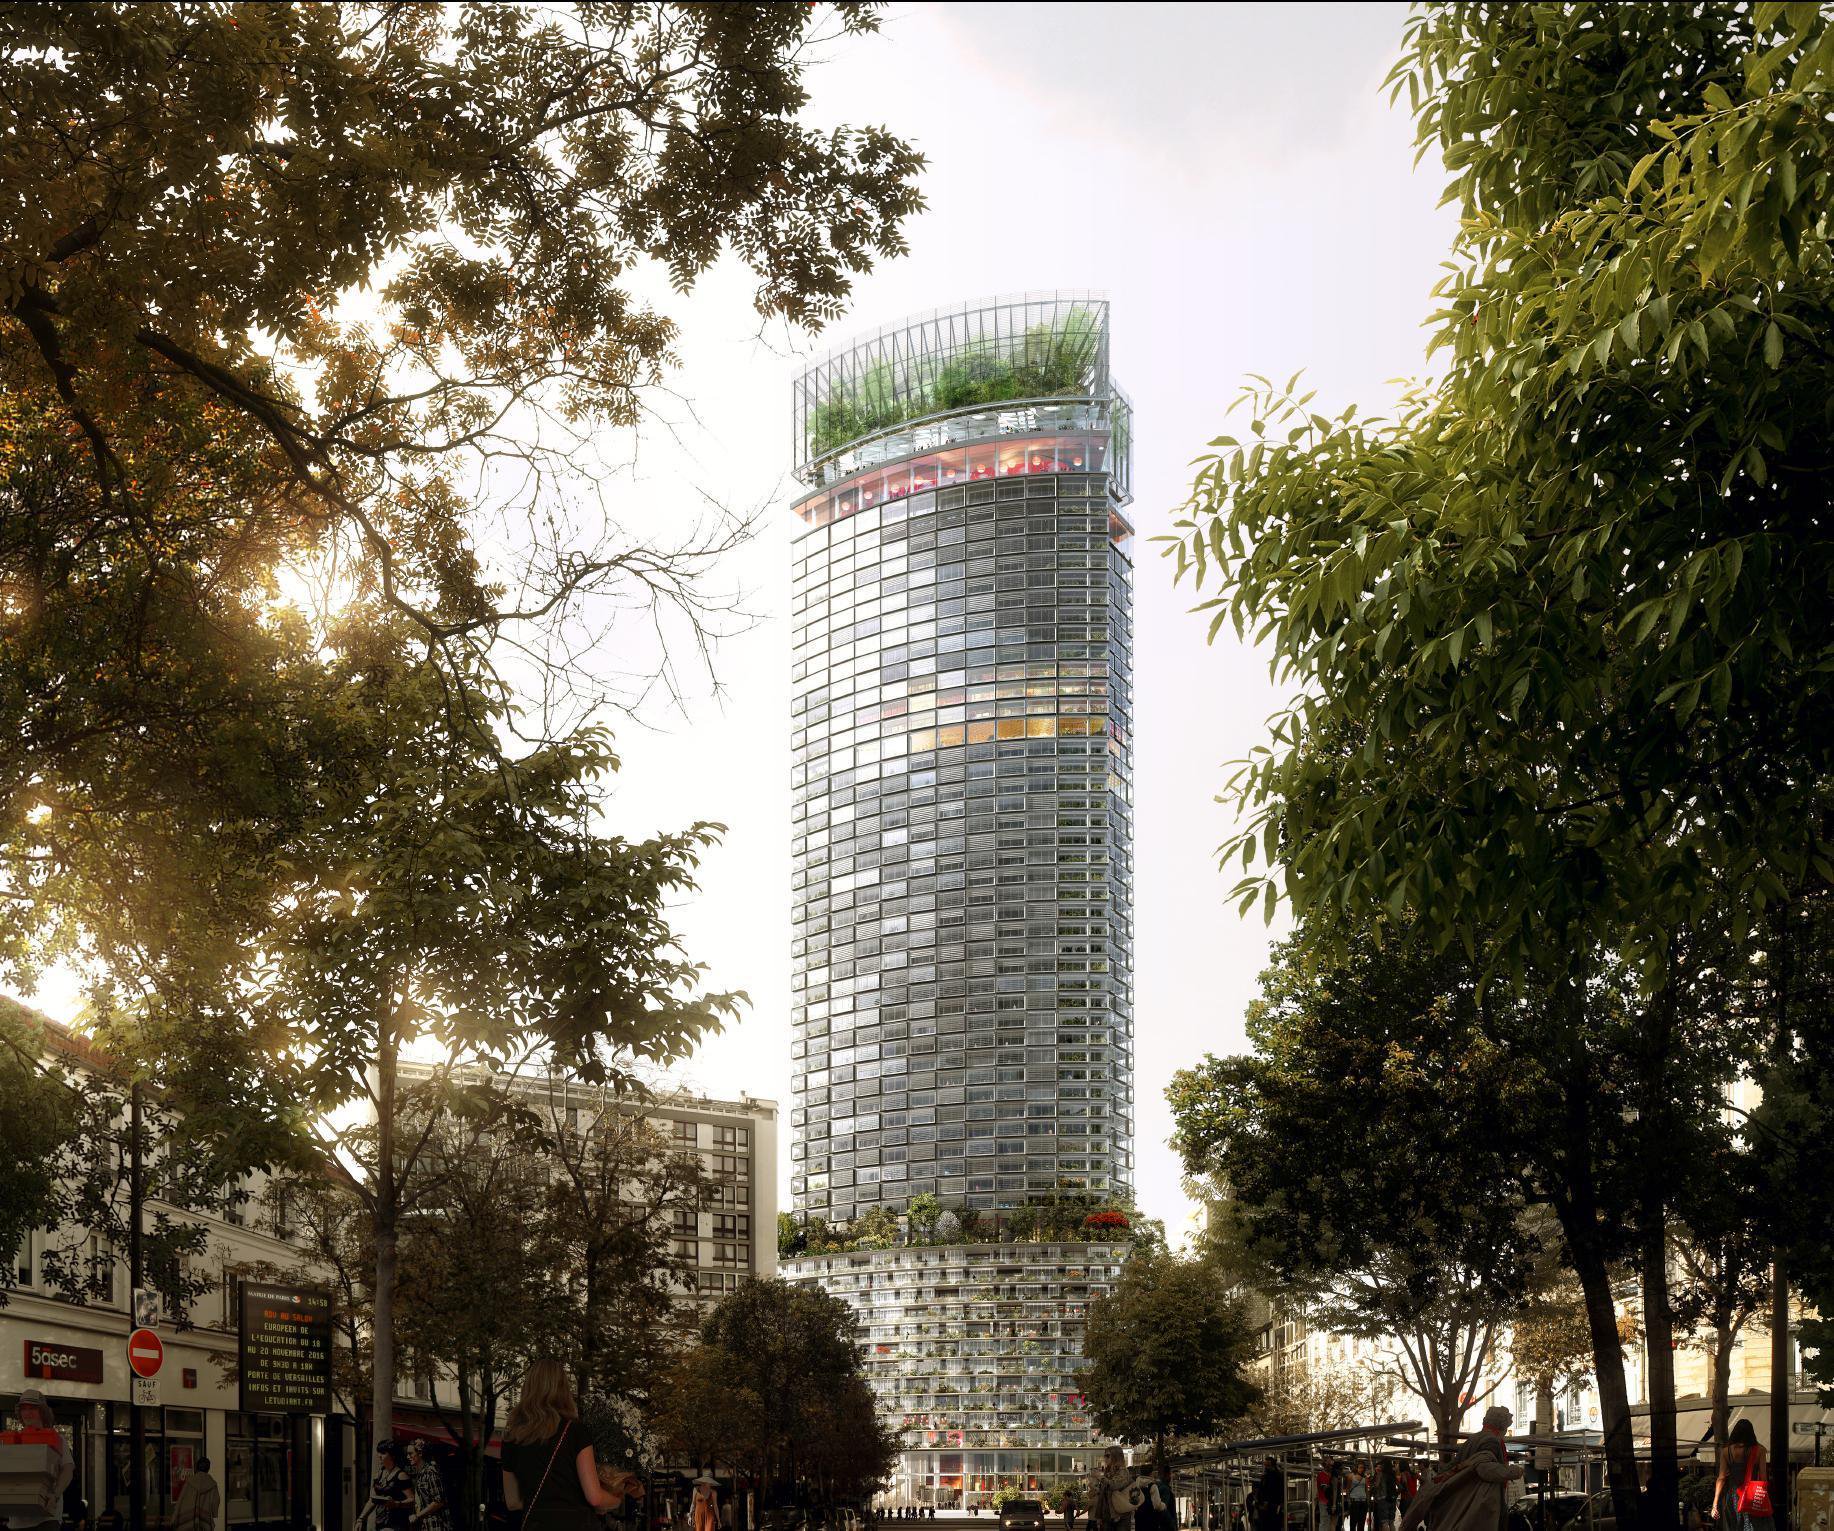 Plus épaisse, plus haute…Avec de la verdure pour faire passer la pilule. Vue officielle et donc idéalisée du projet de réhabilitation de la tour Montparnasse.